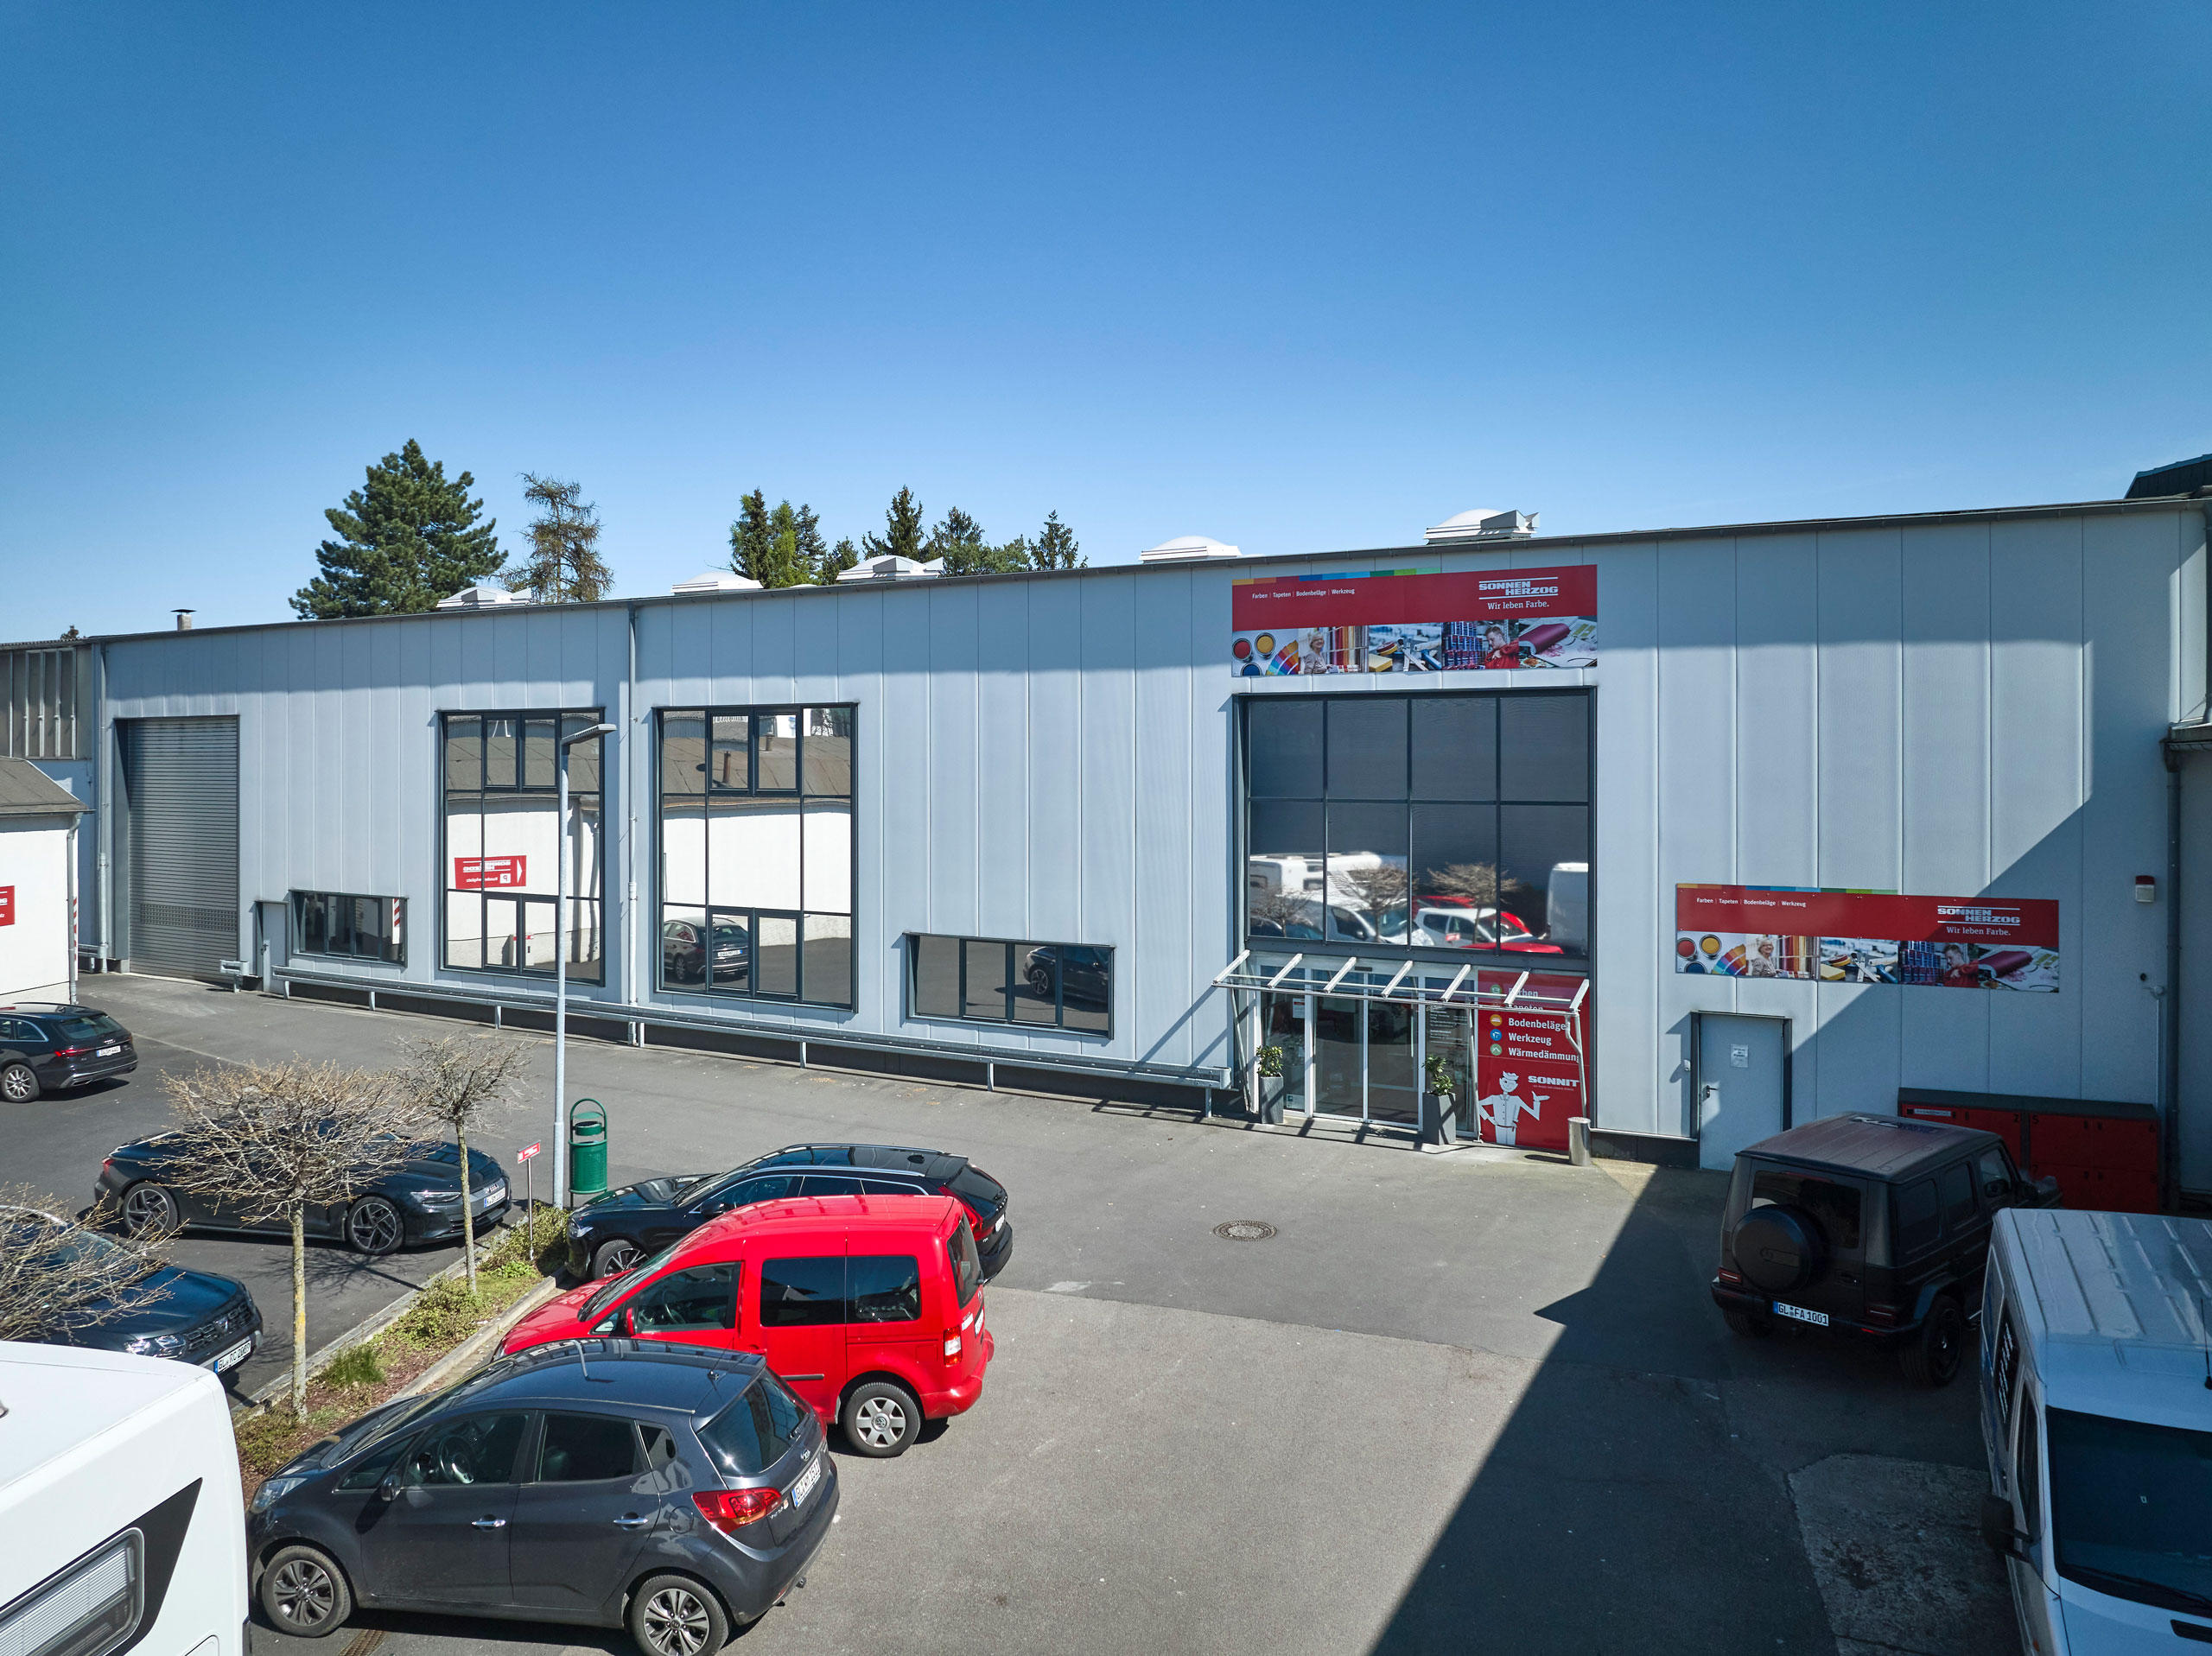 Sonnen Herzog GmbH & Co. KG, Paffrather Straße 132 in Bergisch Gladbach